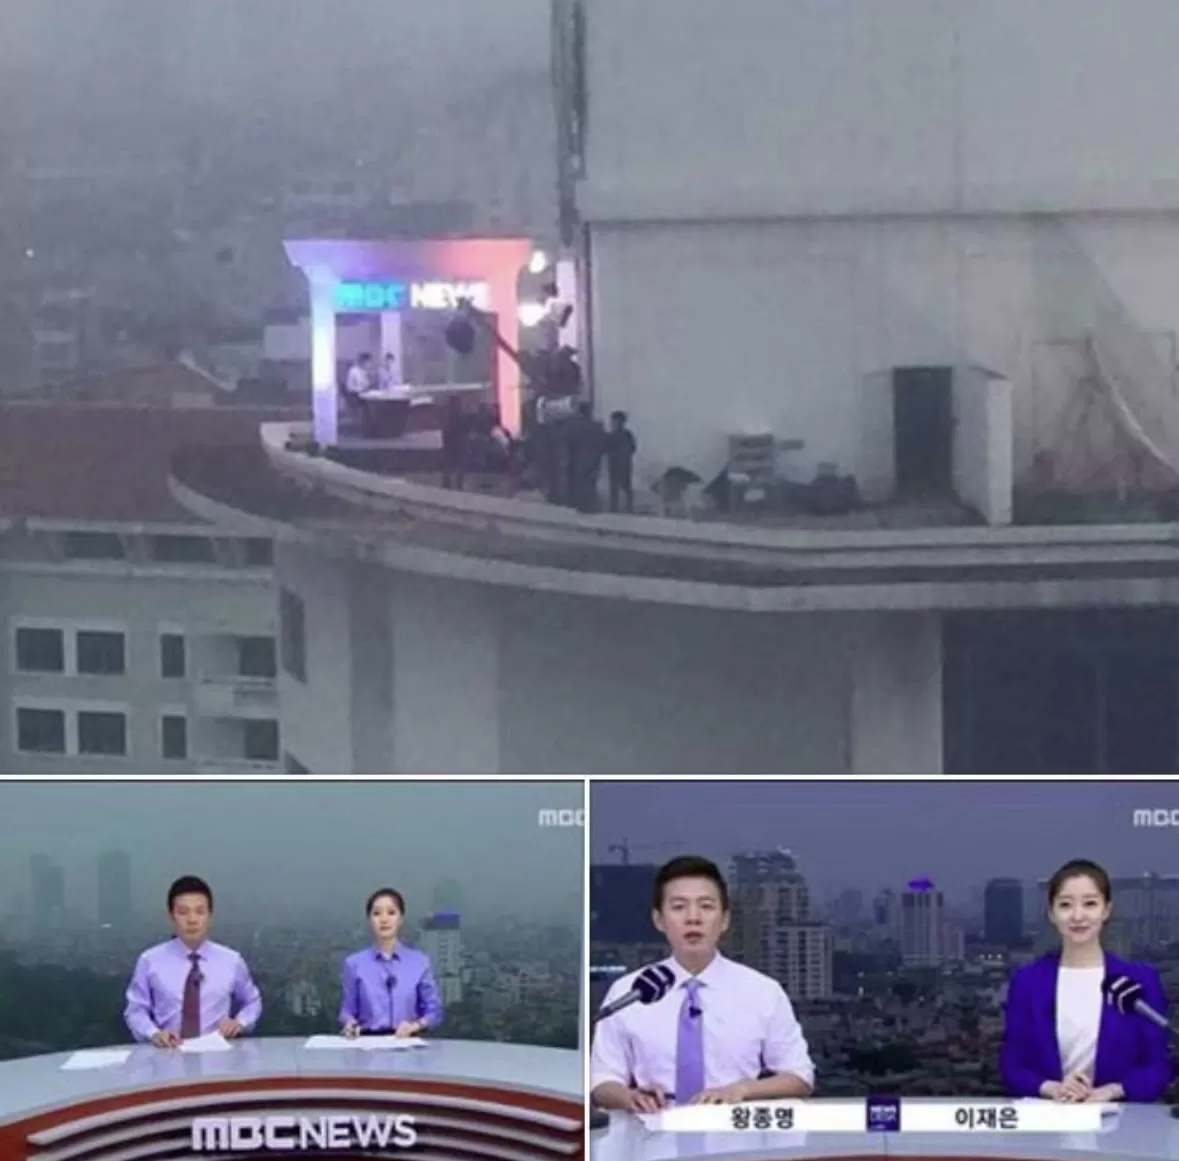 Tak Pakai Green Screen, Channel TV Korea Ini Melakukan Siaran Berita Langsung di Atas Gedung!